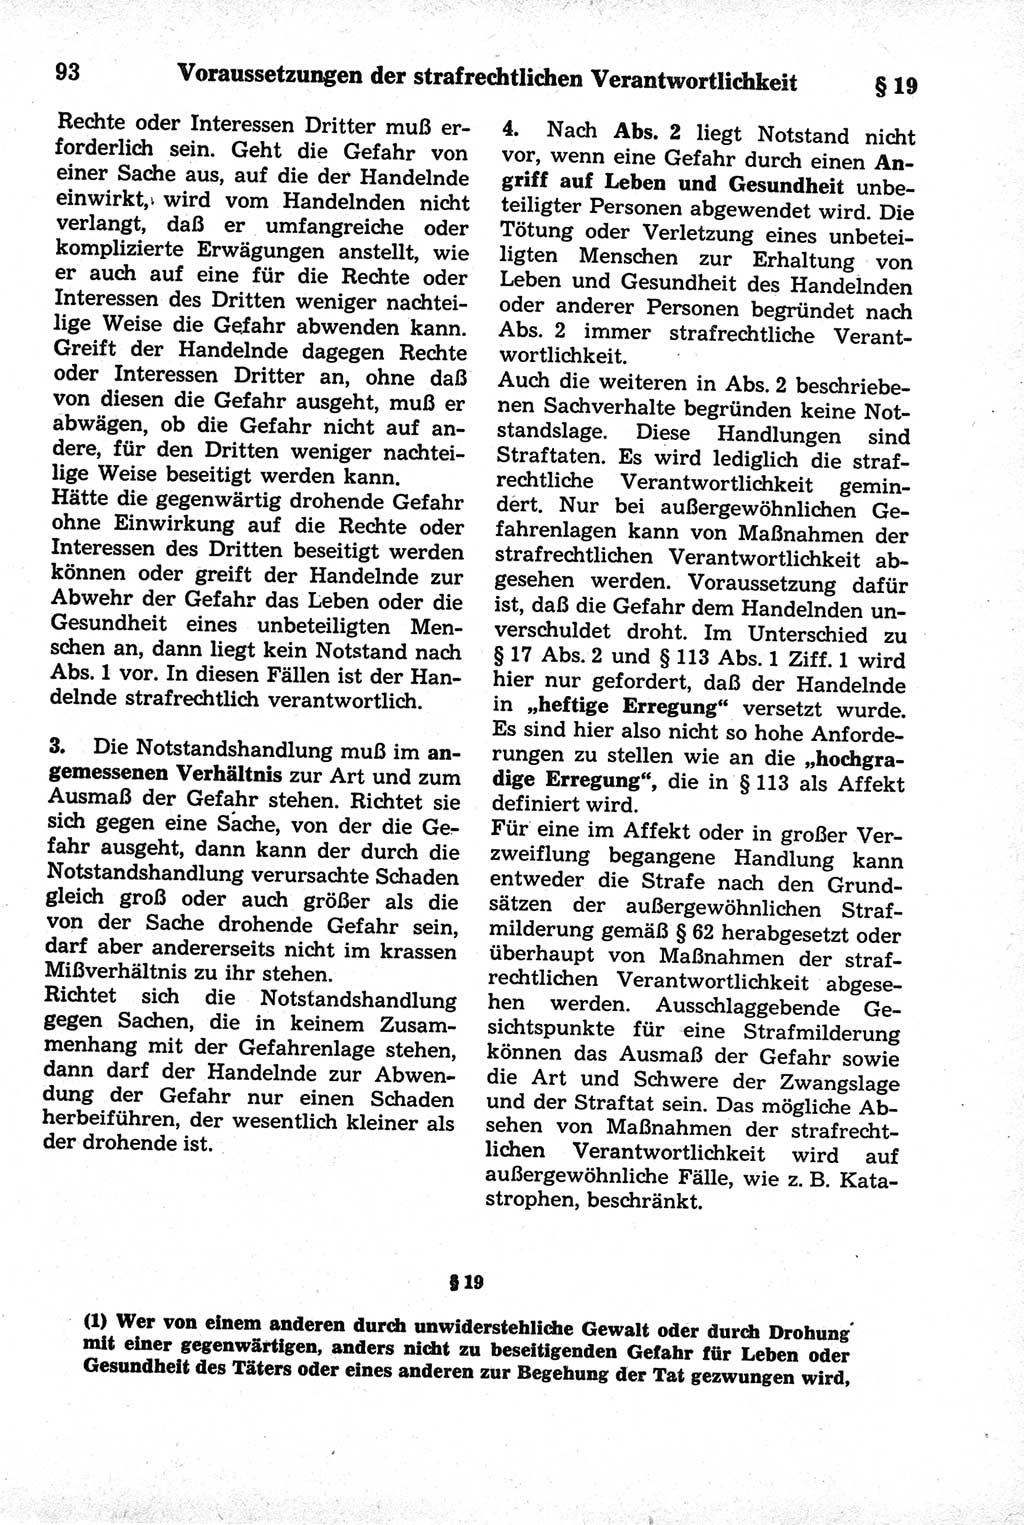 Strafrecht der Deutschen Demokratischen Republik (DDR), Kommentar zum Strafgesetzbuch (StGB) 1981, Seite 93 (Strafr. DDR Komm. StGB 1981, S. 93)